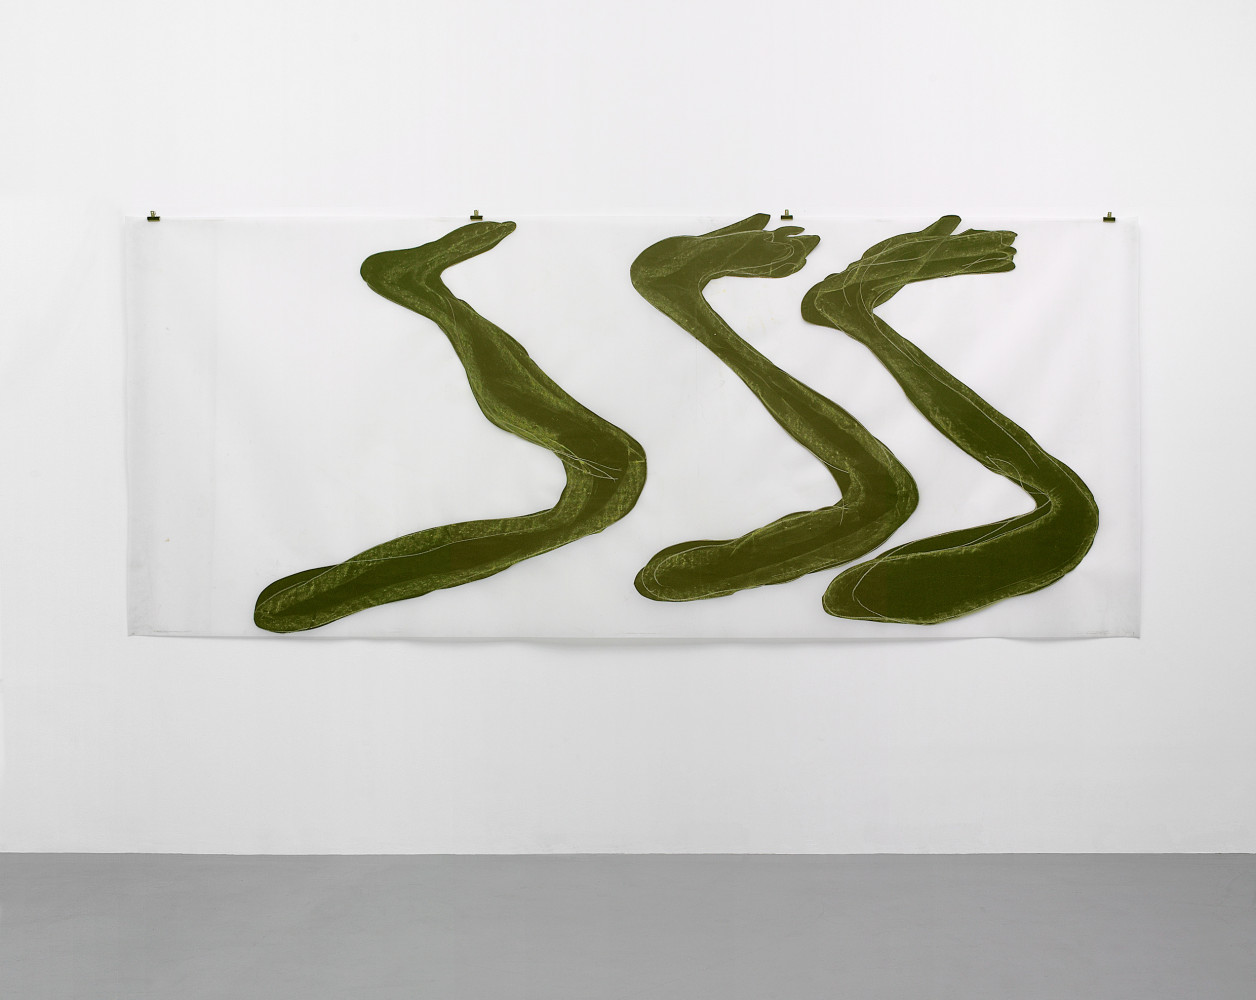 Mario Merz, Installationsansicht, Buchmann Galerie, 2007